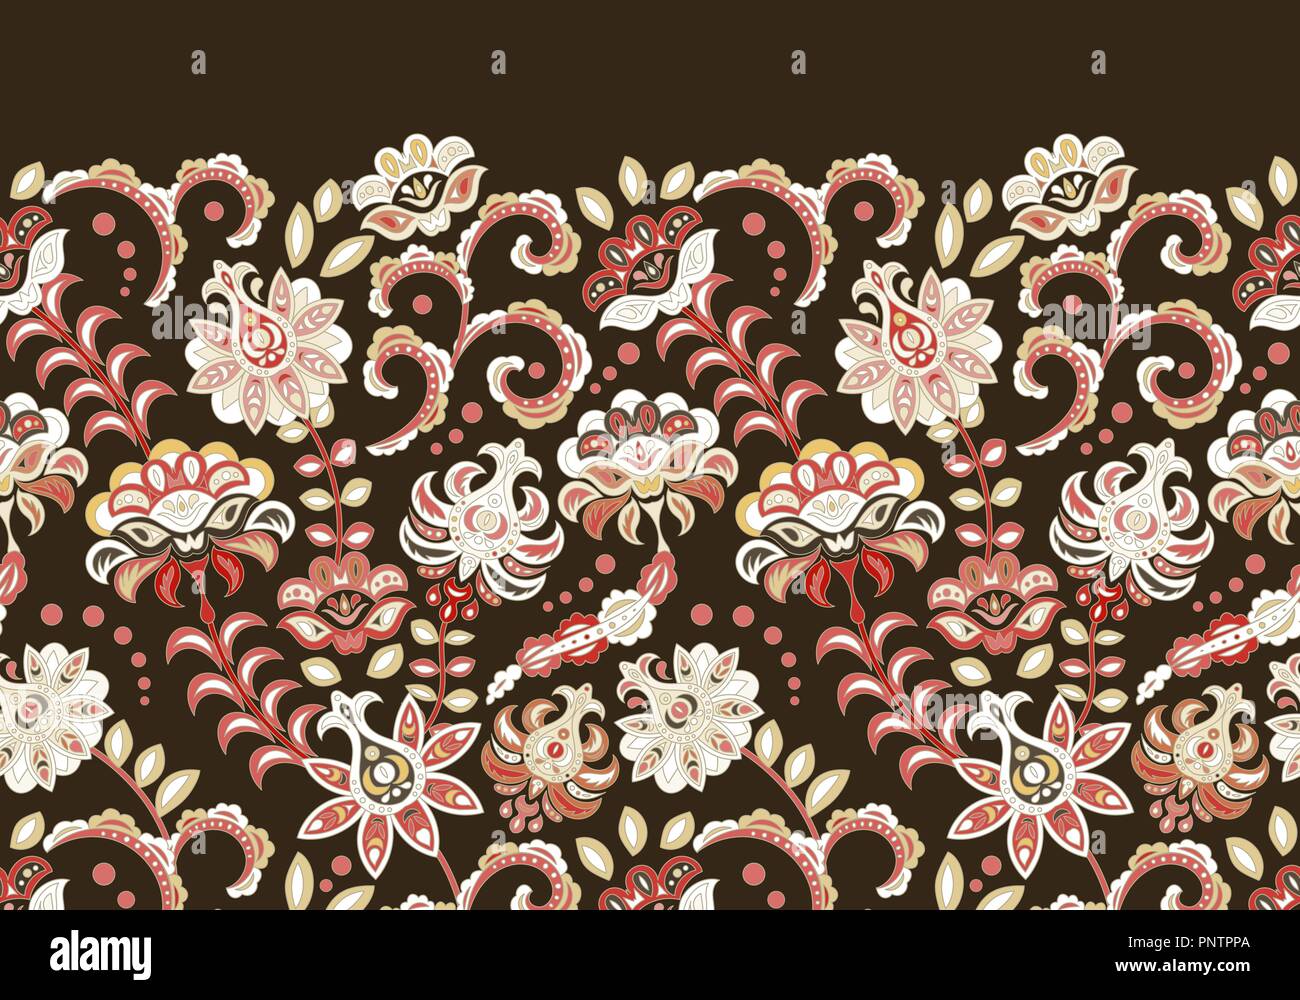 Des motifs - frontière florale de Fleurs stylisées. Vecteur horizontal d'une frange. Vimous blanc sur marron. Illustration de Vecteur